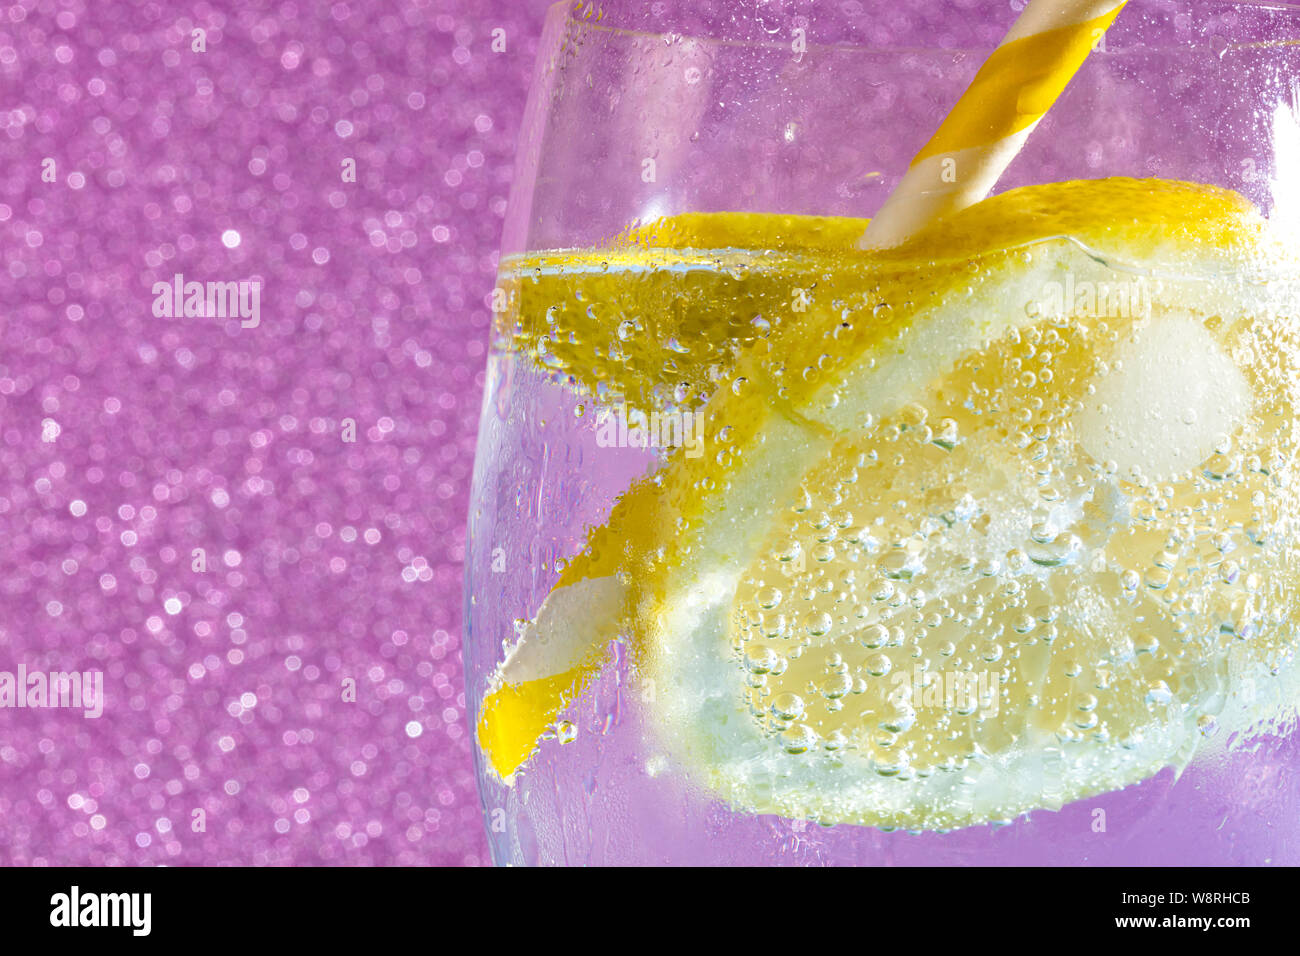 Des bulles de soude avec un cube de glace, d'une tranche de citron et une paille sur un fond rose. Espace libre pour le texte Banque D'Images